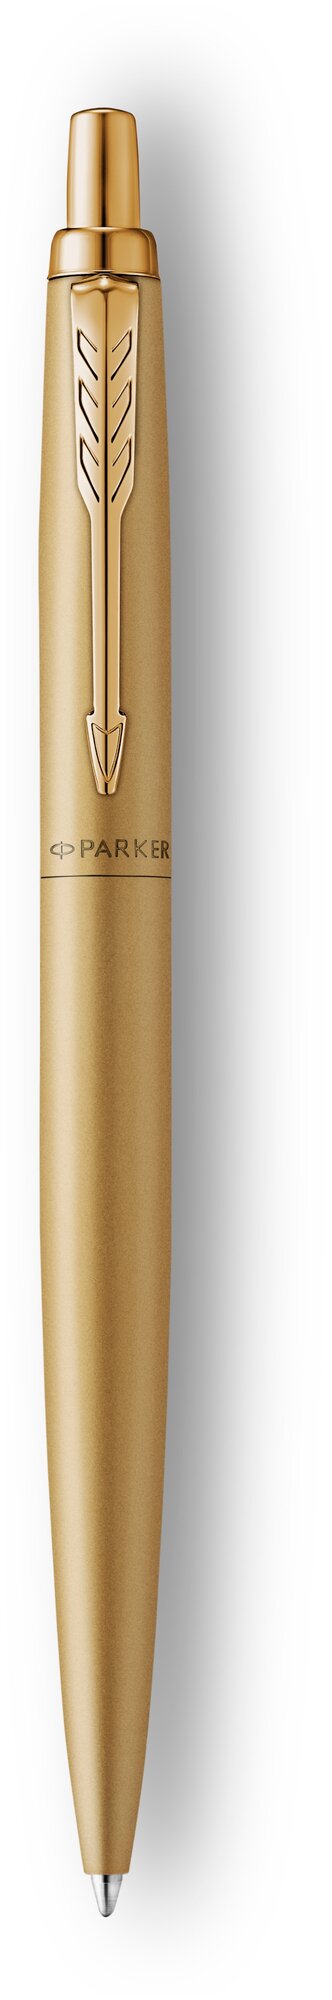 Ручка шариков. Parker Jotter Monochrome XL SE20 (2122754) корп.золотистый M чернила син. подар.кор.